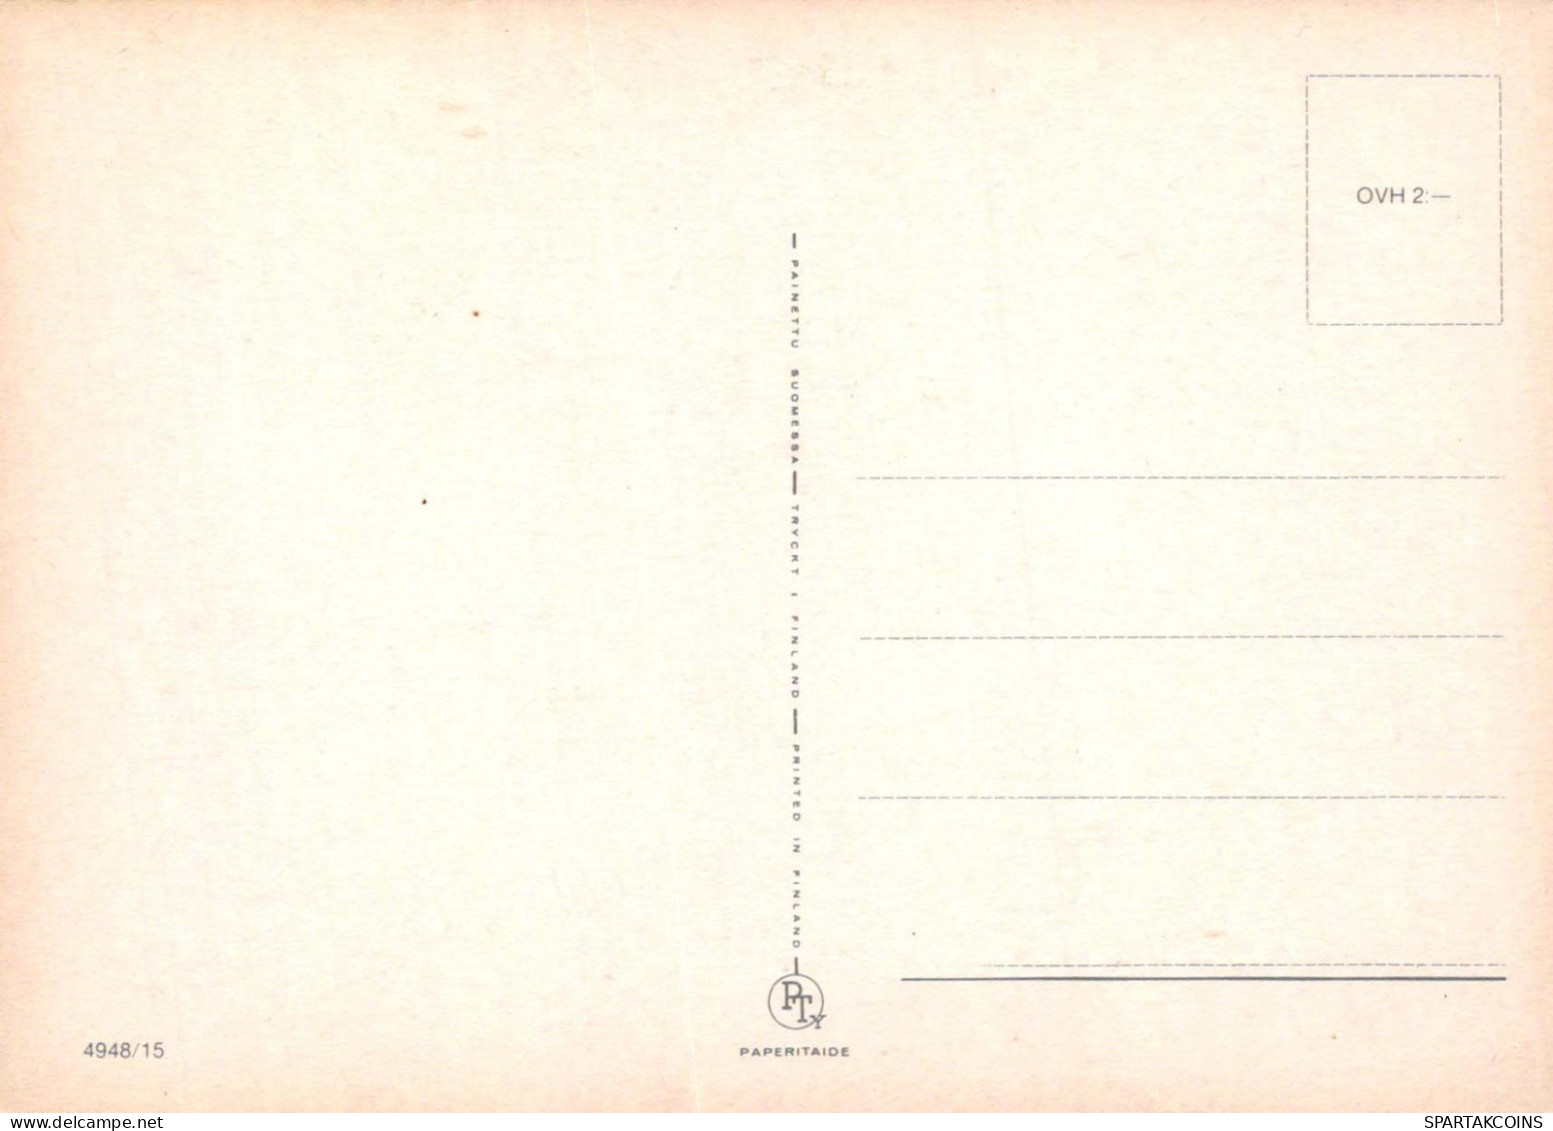 NIÑOS HUMOR Vintage Tarjeta Postal CPSM #PBV289.A - Humorous Cards